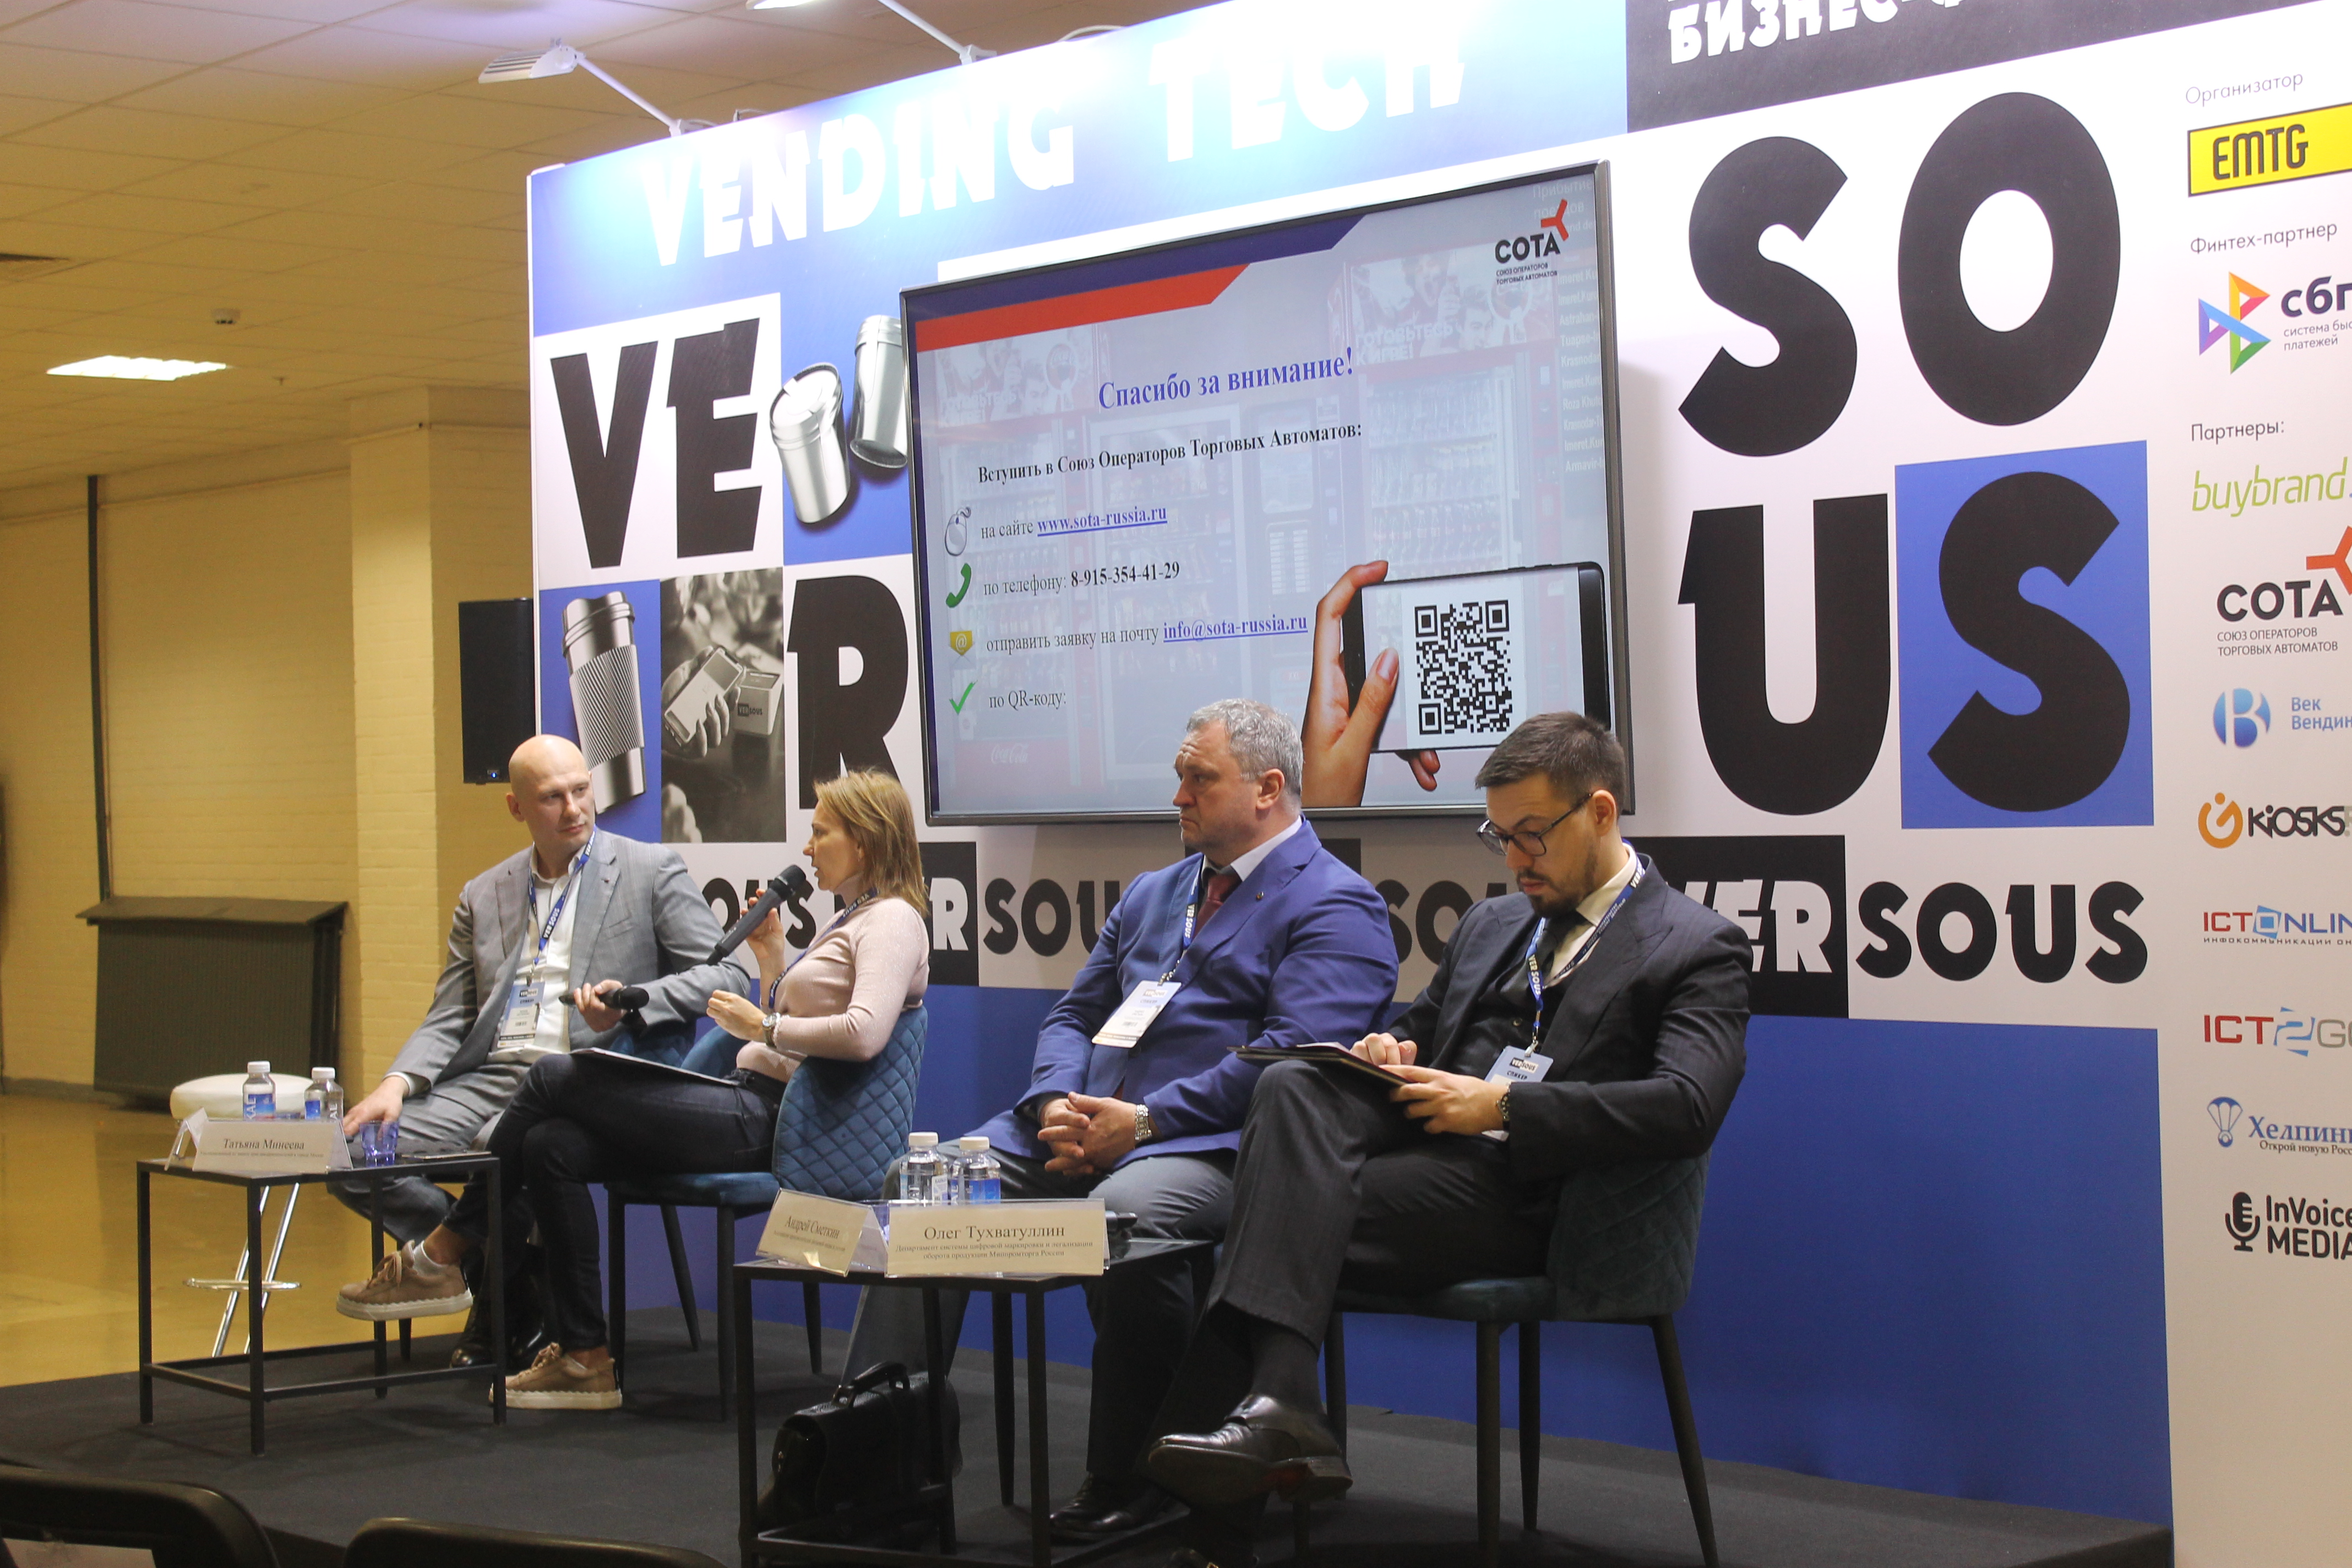 Ассоциация приняла участие в форуме предпринимателей “VerSous”